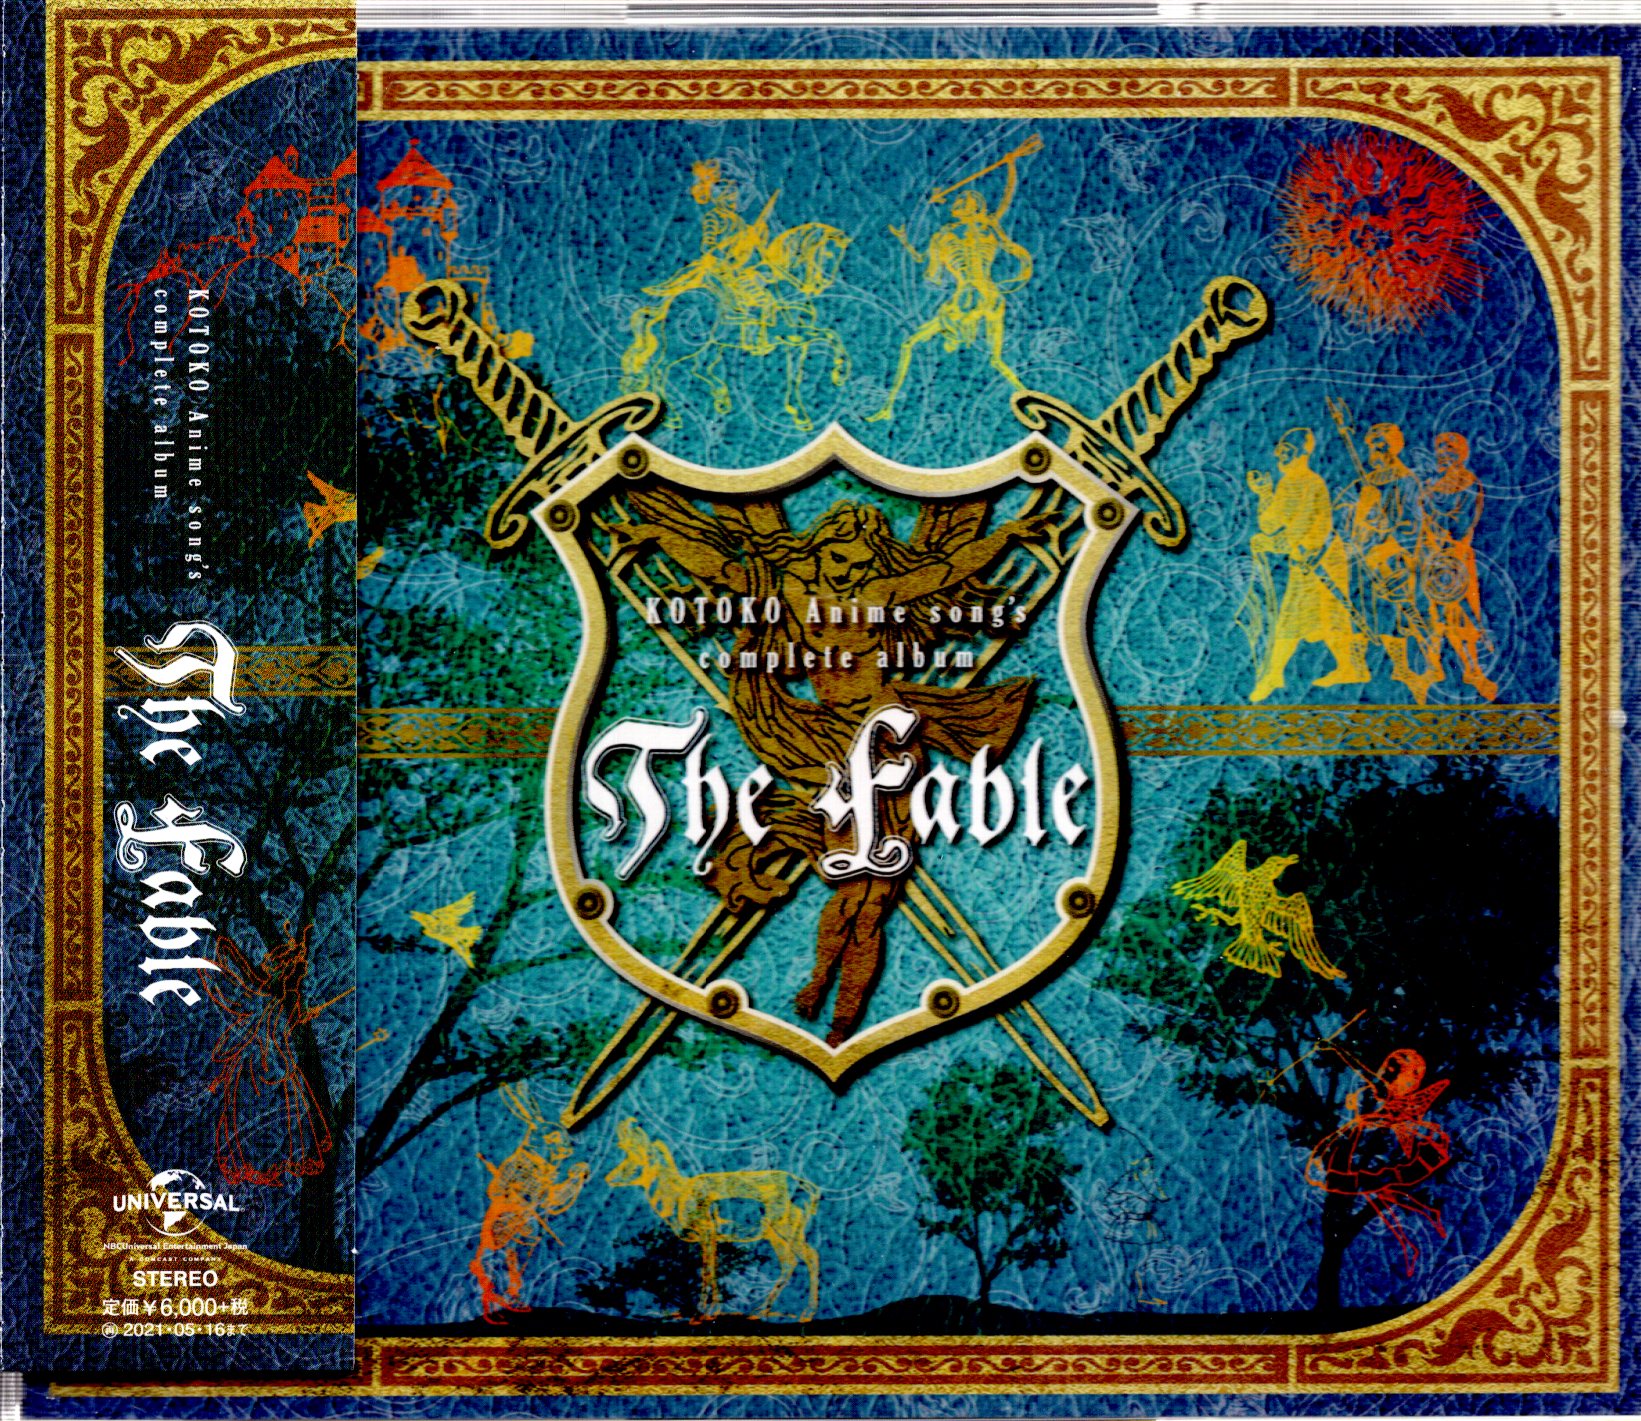 アニソン歌手CD KOTOKO Anime song's complete album “The Fable